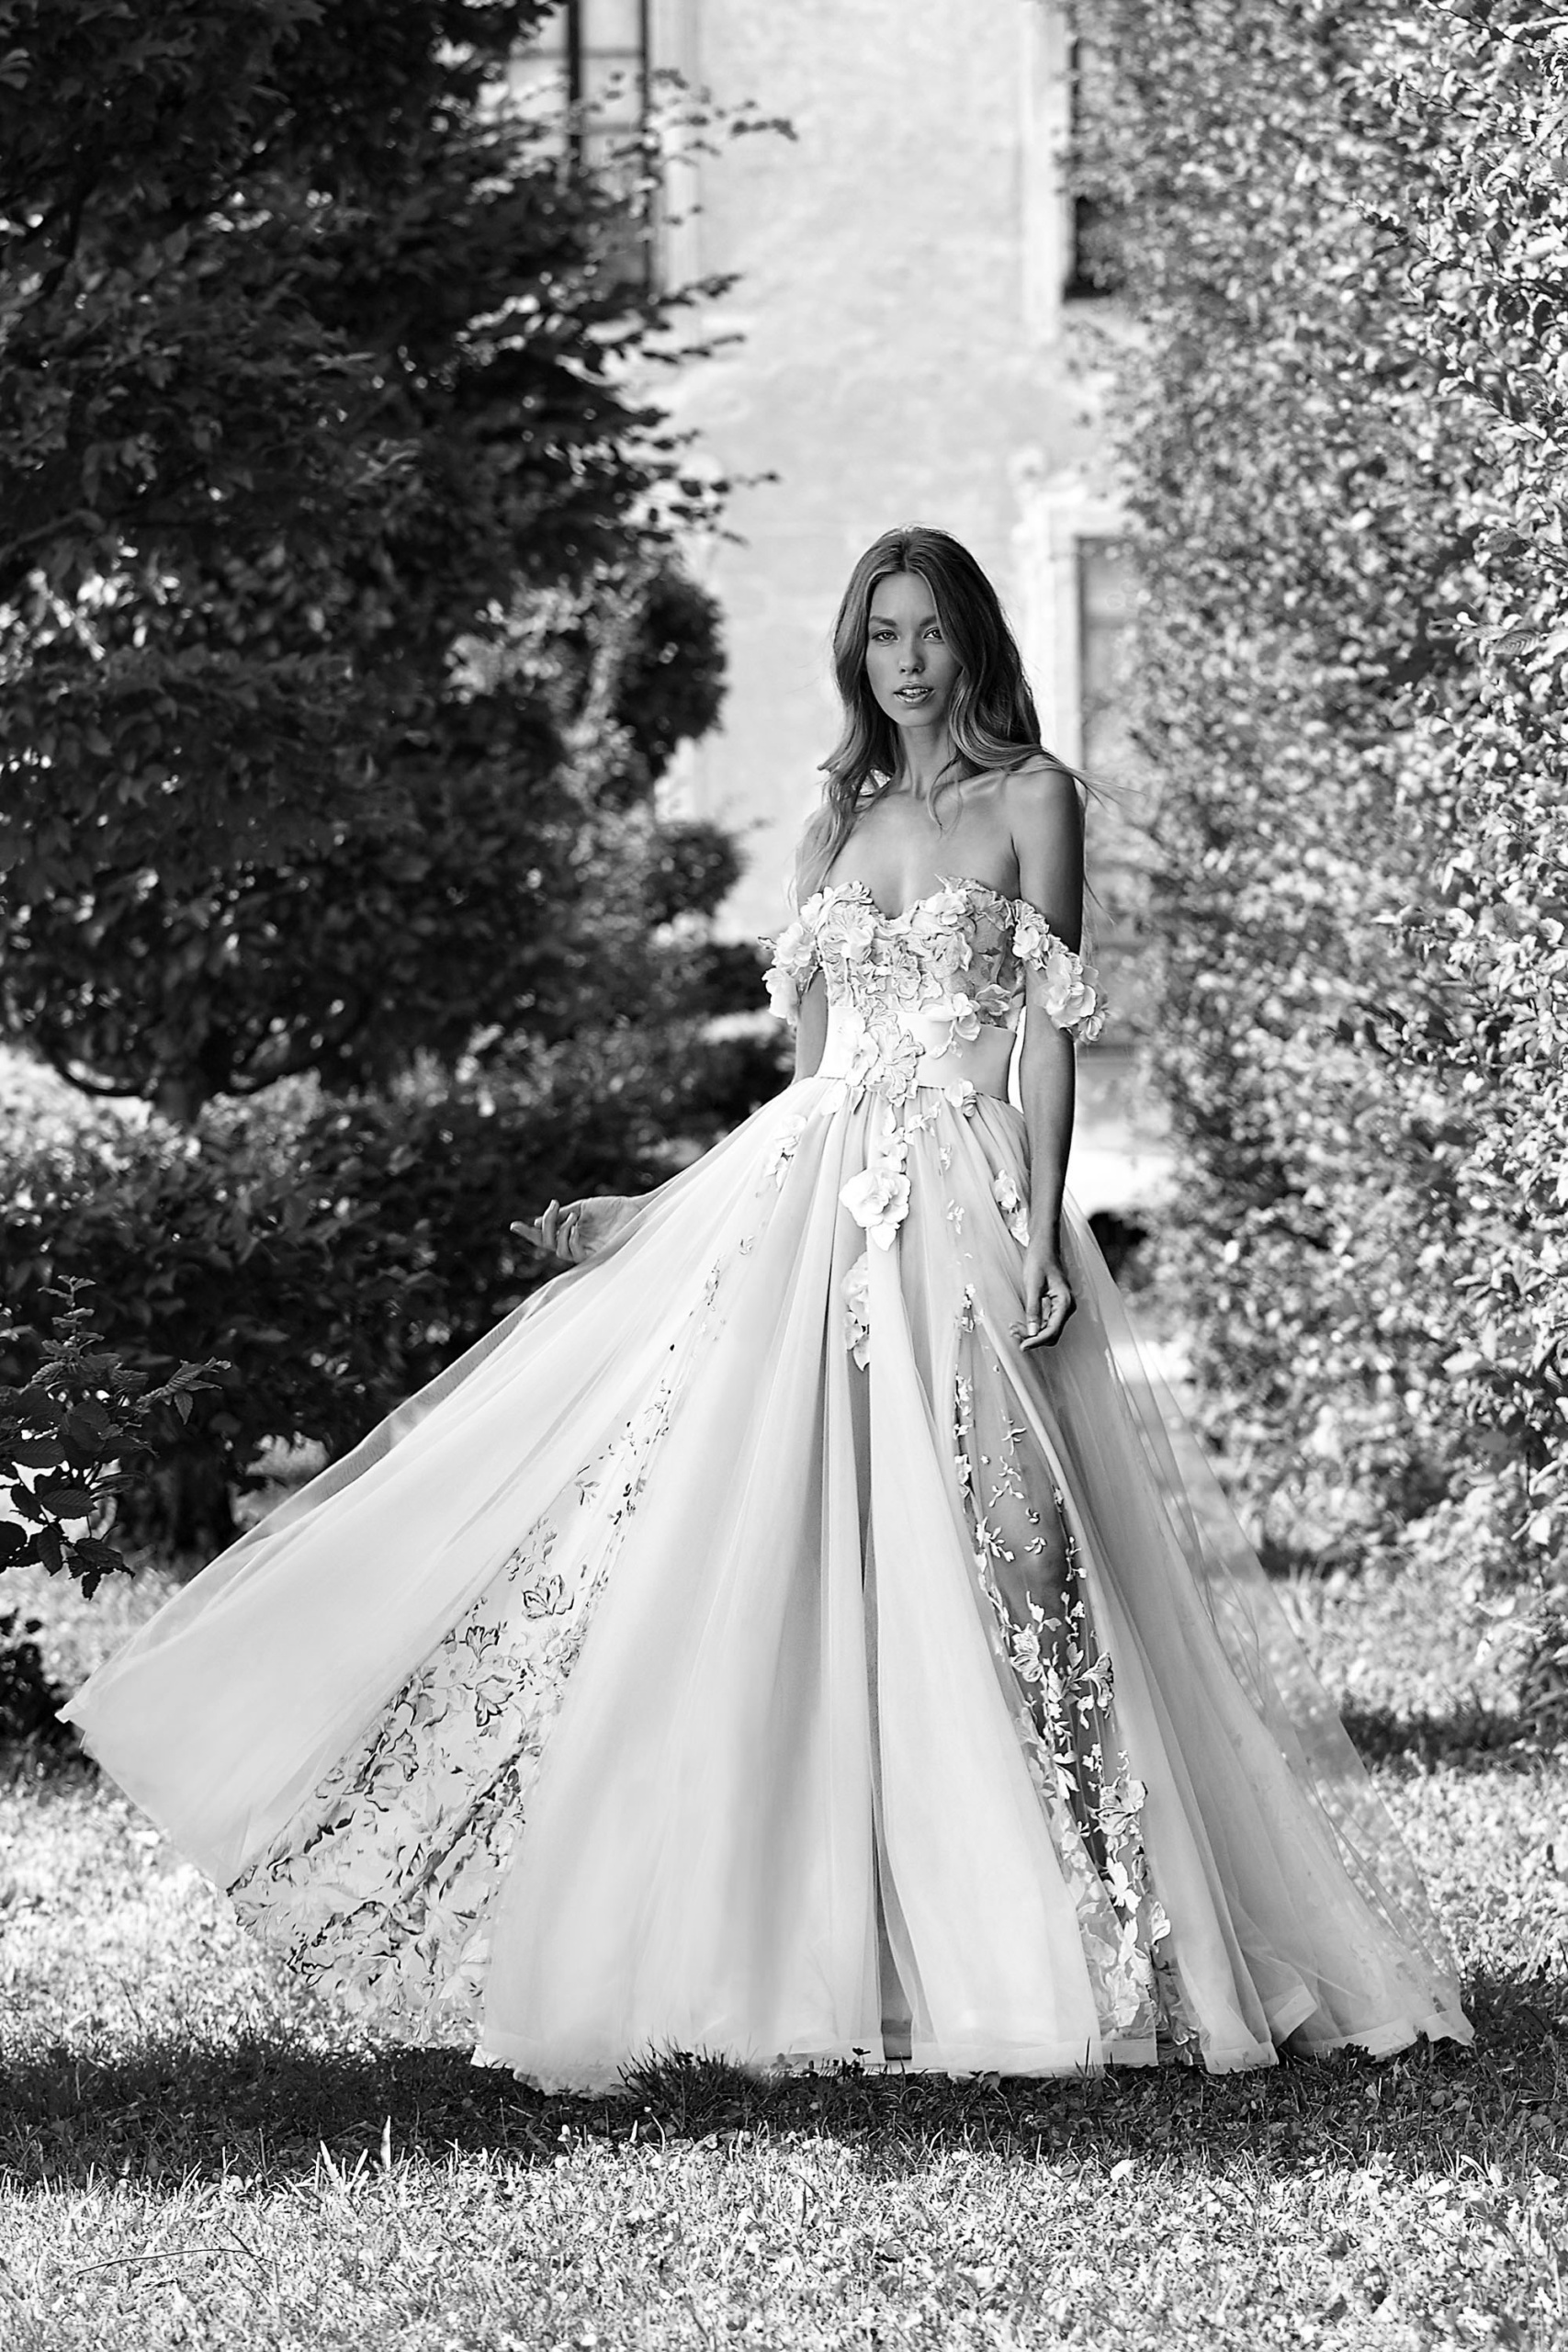 Abiti da Sposa Amalfi: Dove L'Esclusività si Veste di Arte, Moda e Stile Ineguagliabile - Eleganza di Stile per un Matrimonio da Sogno